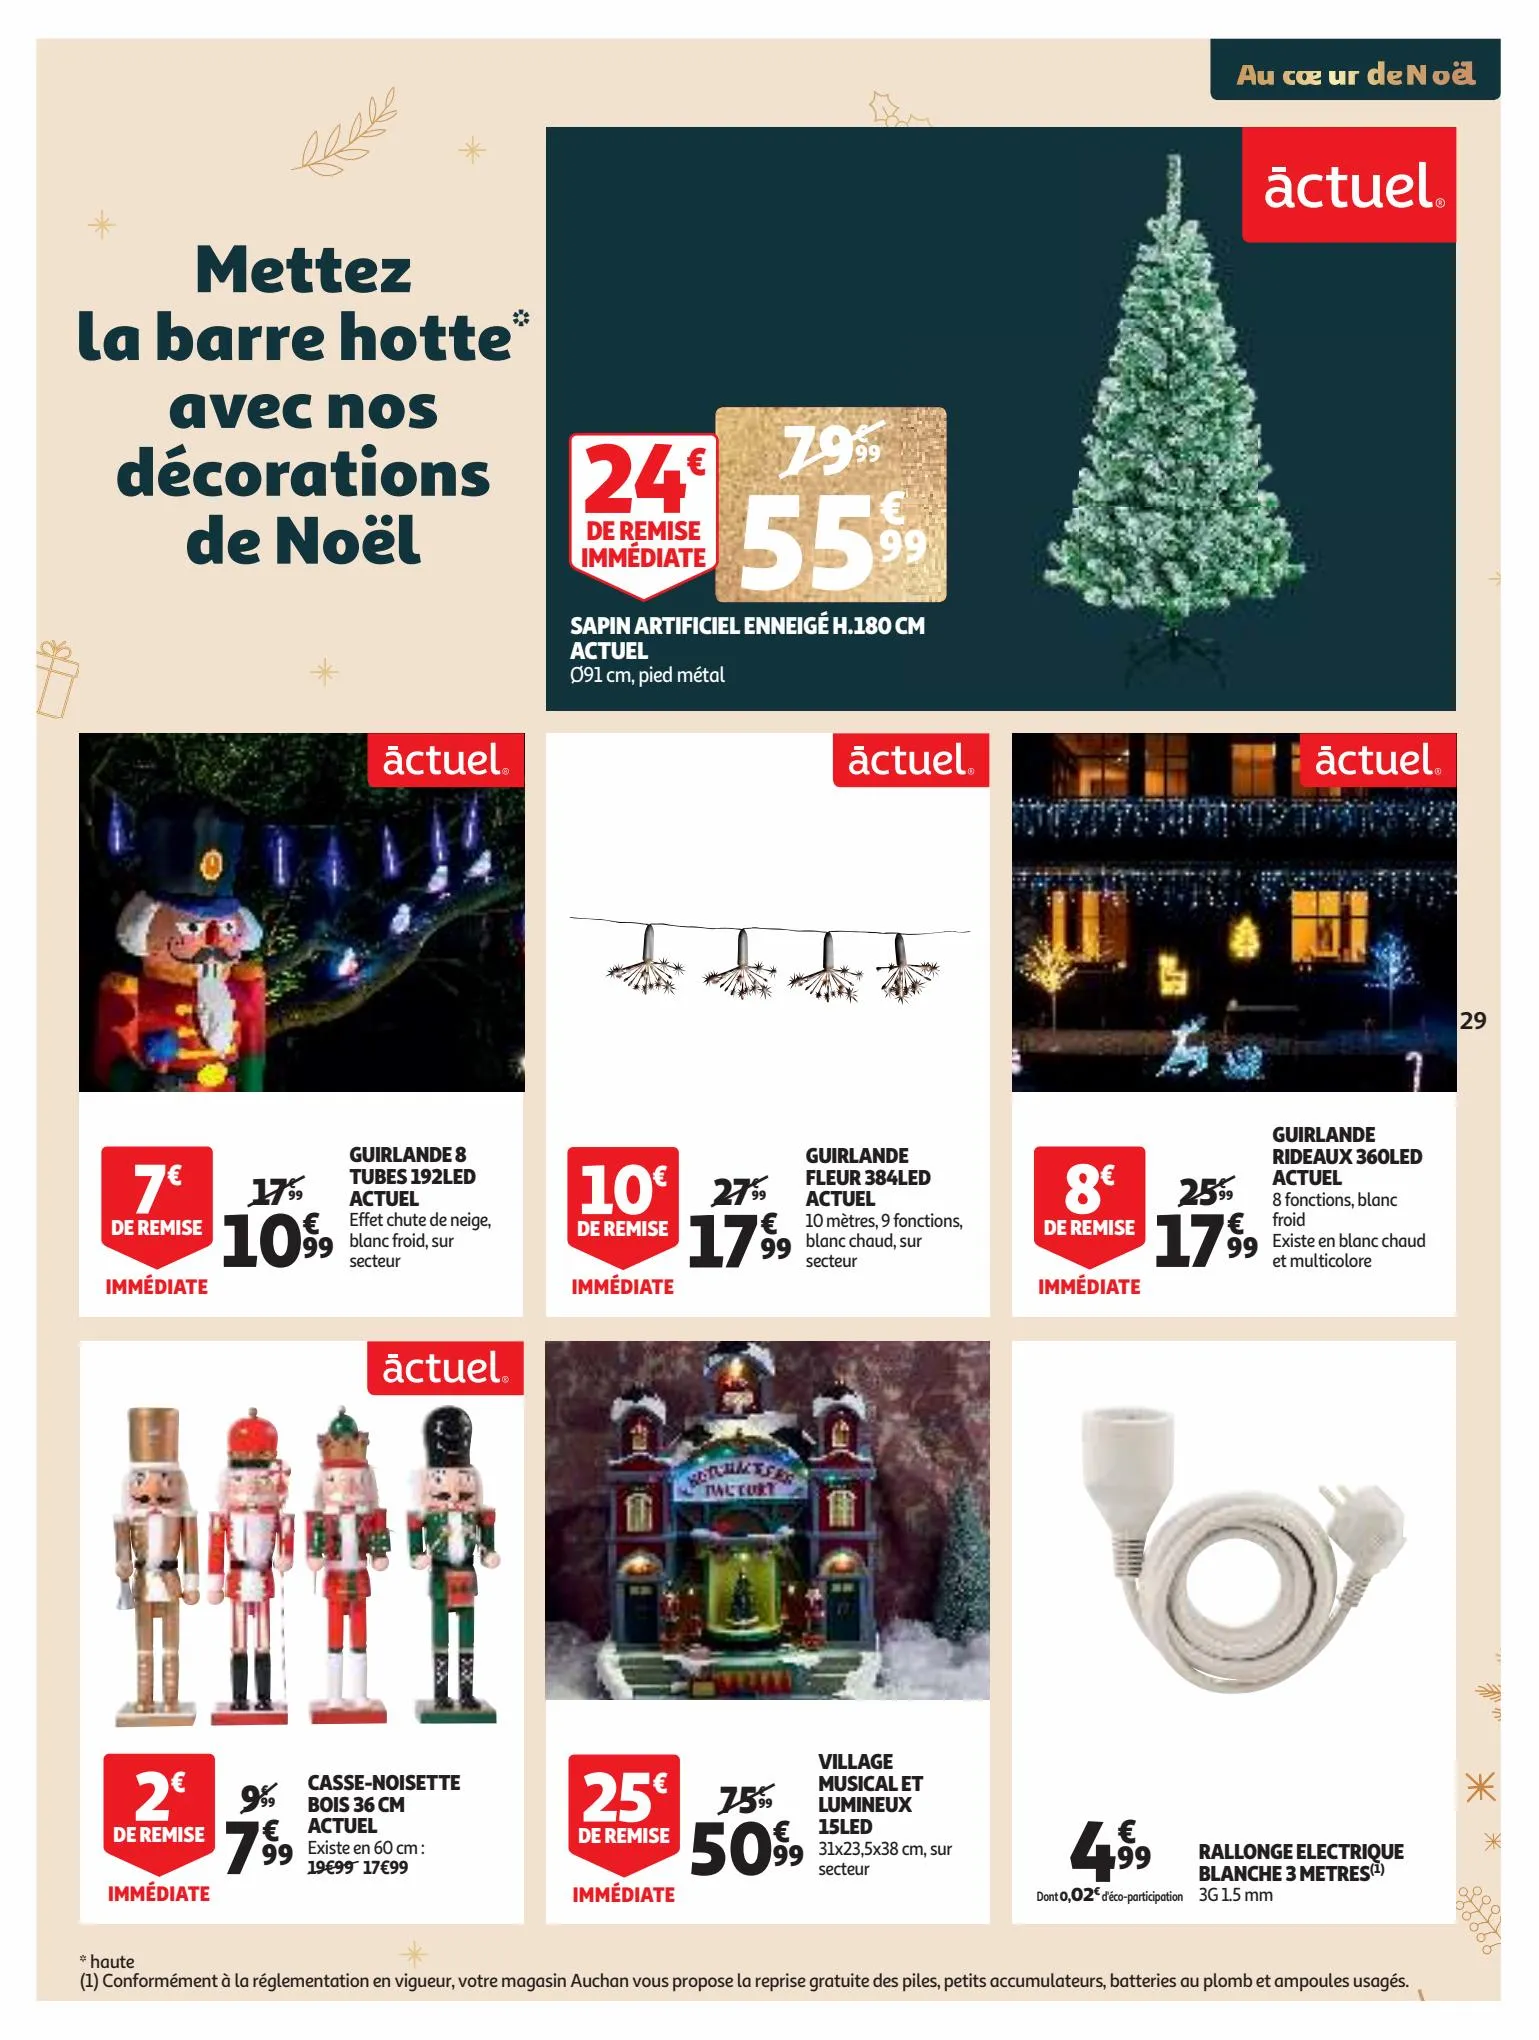 Catalogue 25 jours Auchan, page 00029